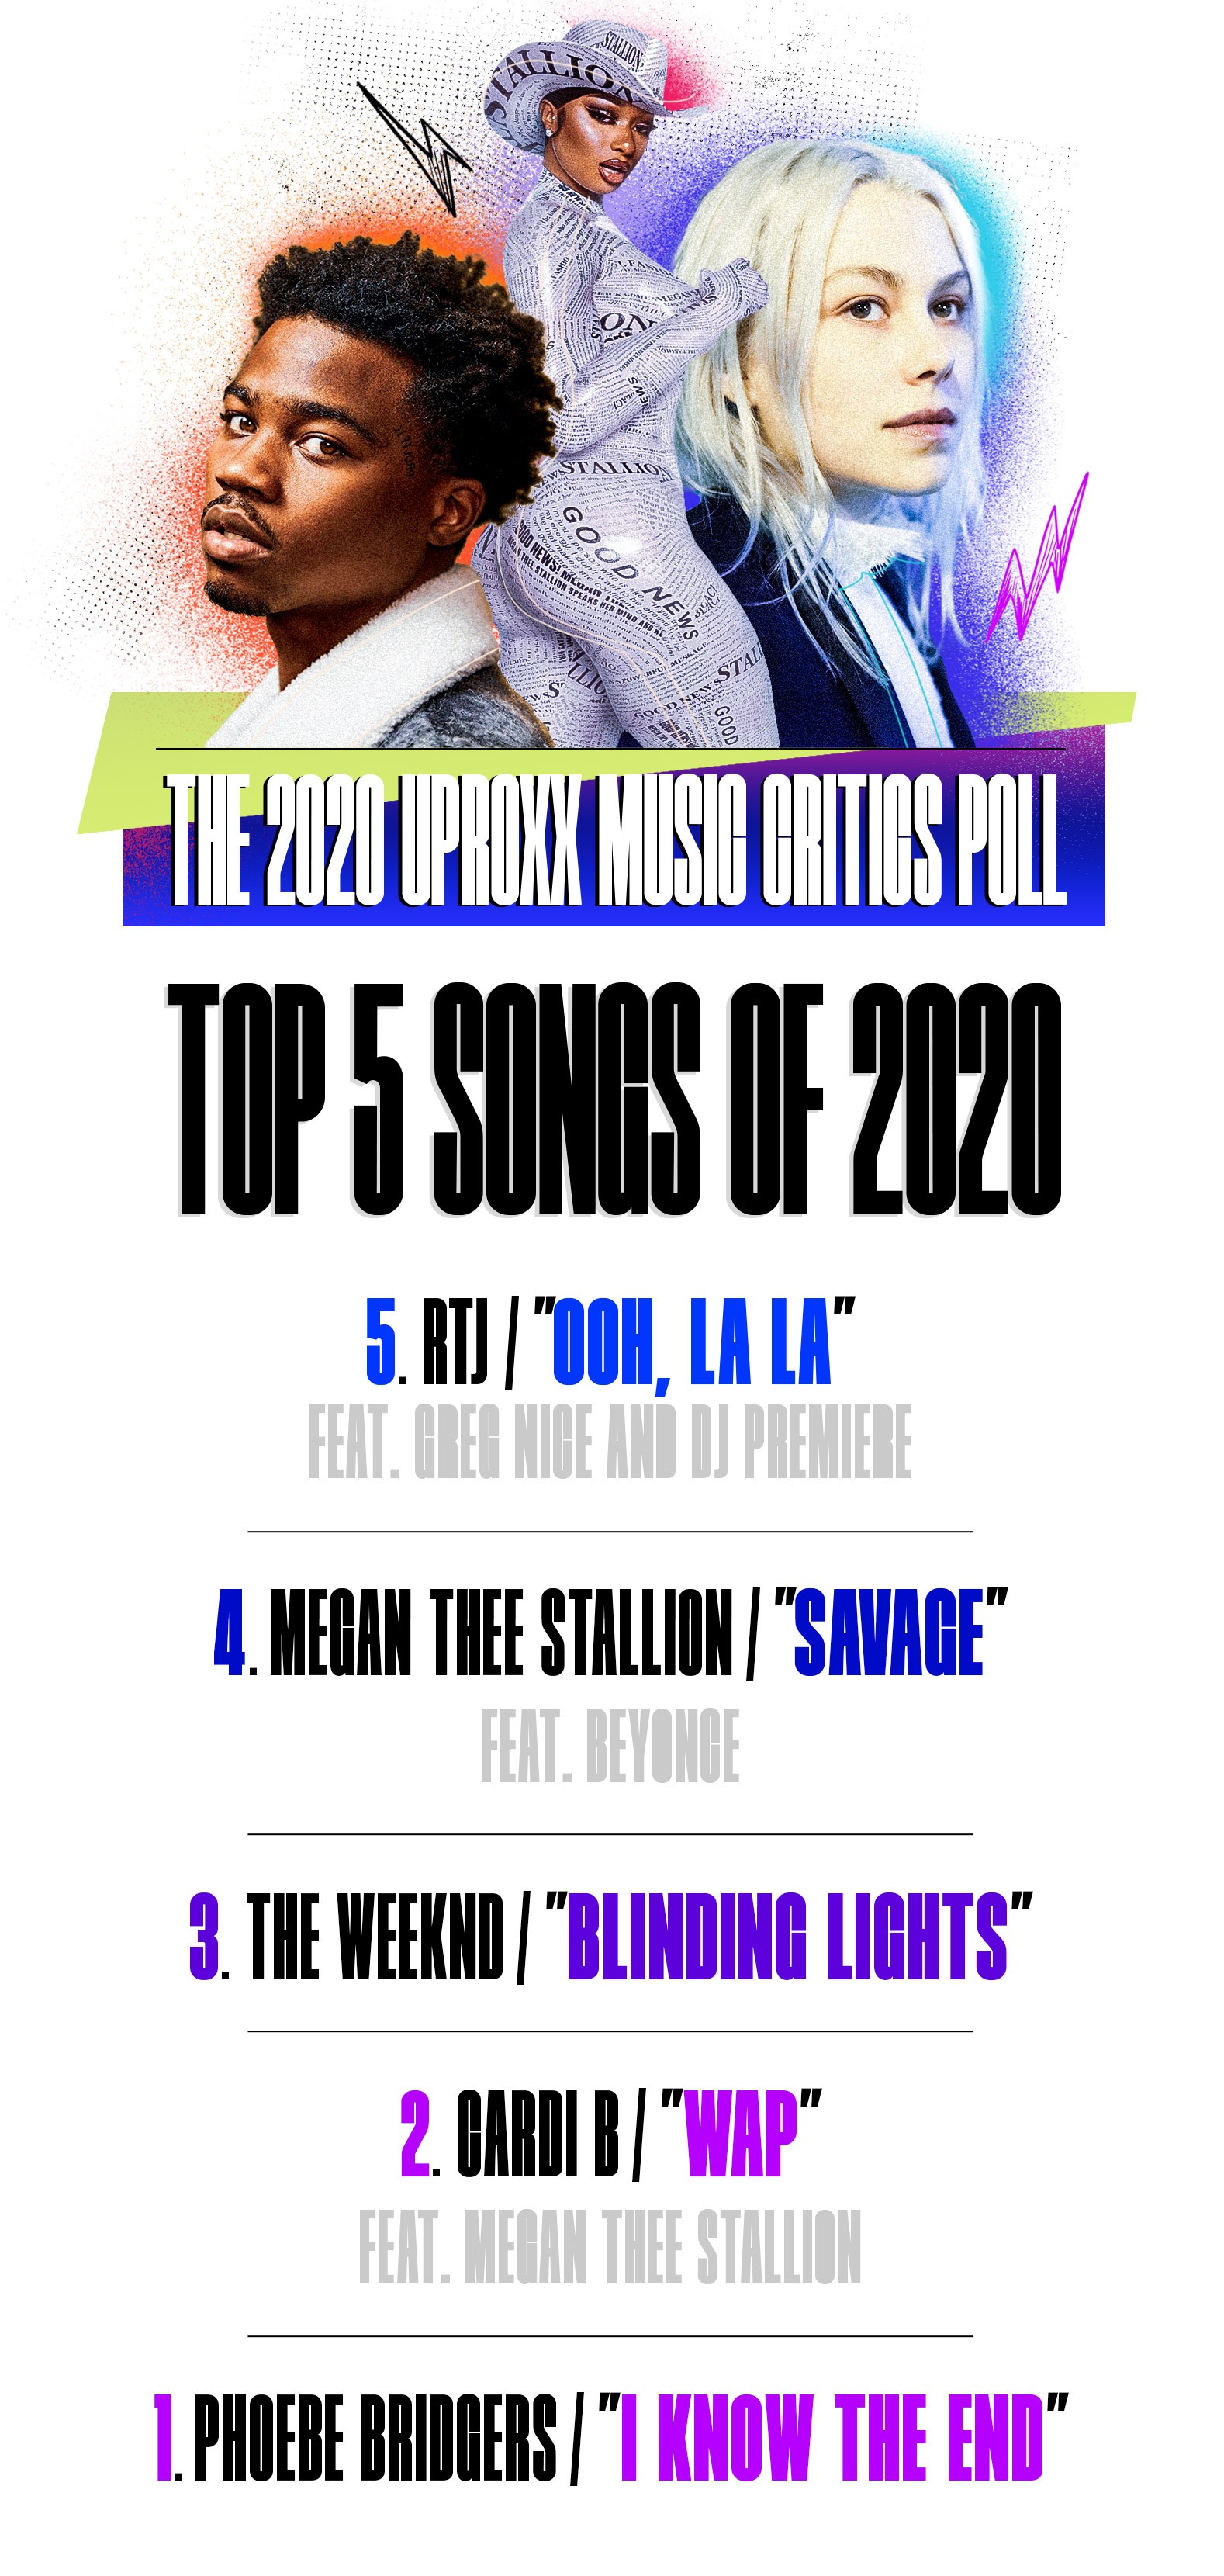 Top 5 songs of 2020